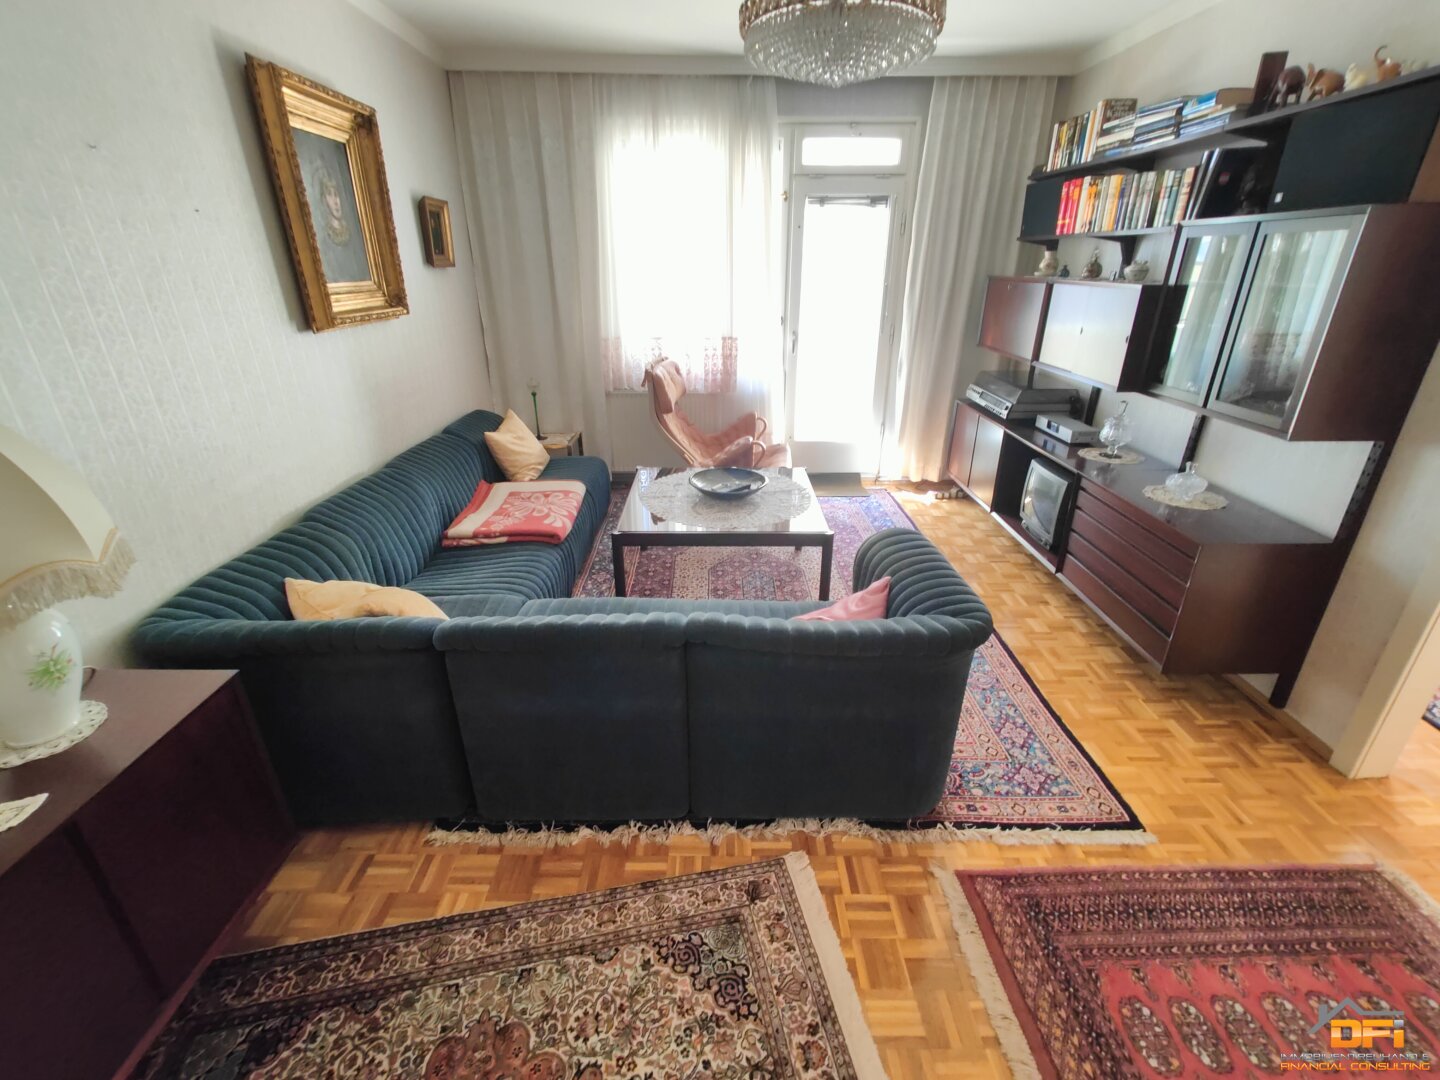 WESTLOGGIA: Wunderschöne 4-Zimmer Wohnung mit Loggia in zentraler Lage nahe Matzleinsdorfer Platz - 3D-Besichtigung